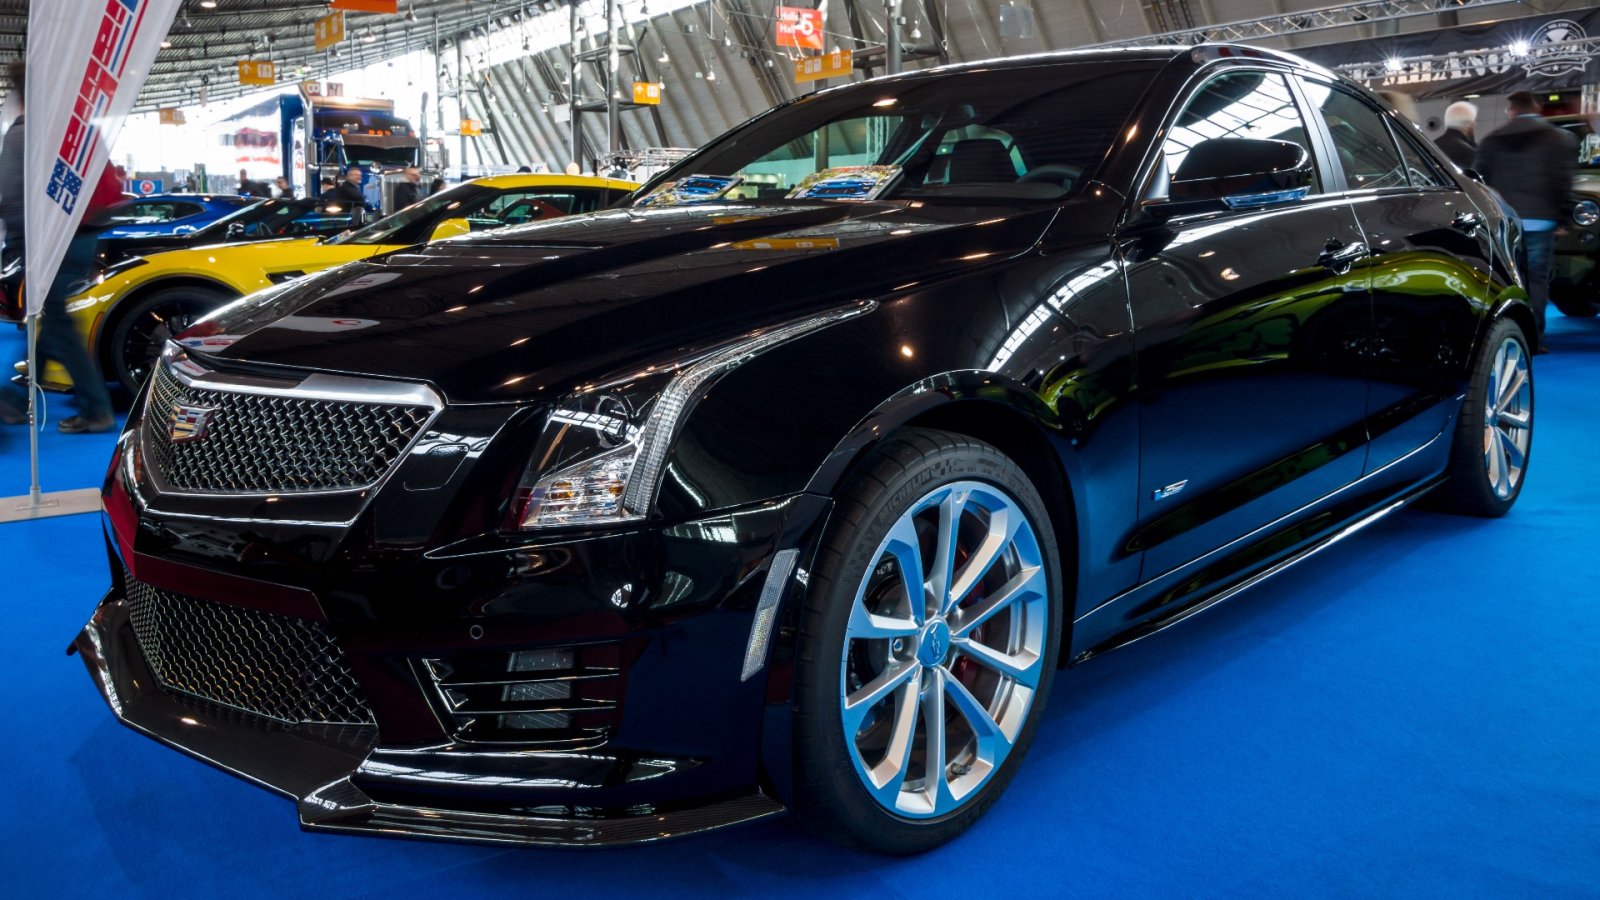 Descubra a cara do desempenho de luxo americano: Cadillac ATS-V